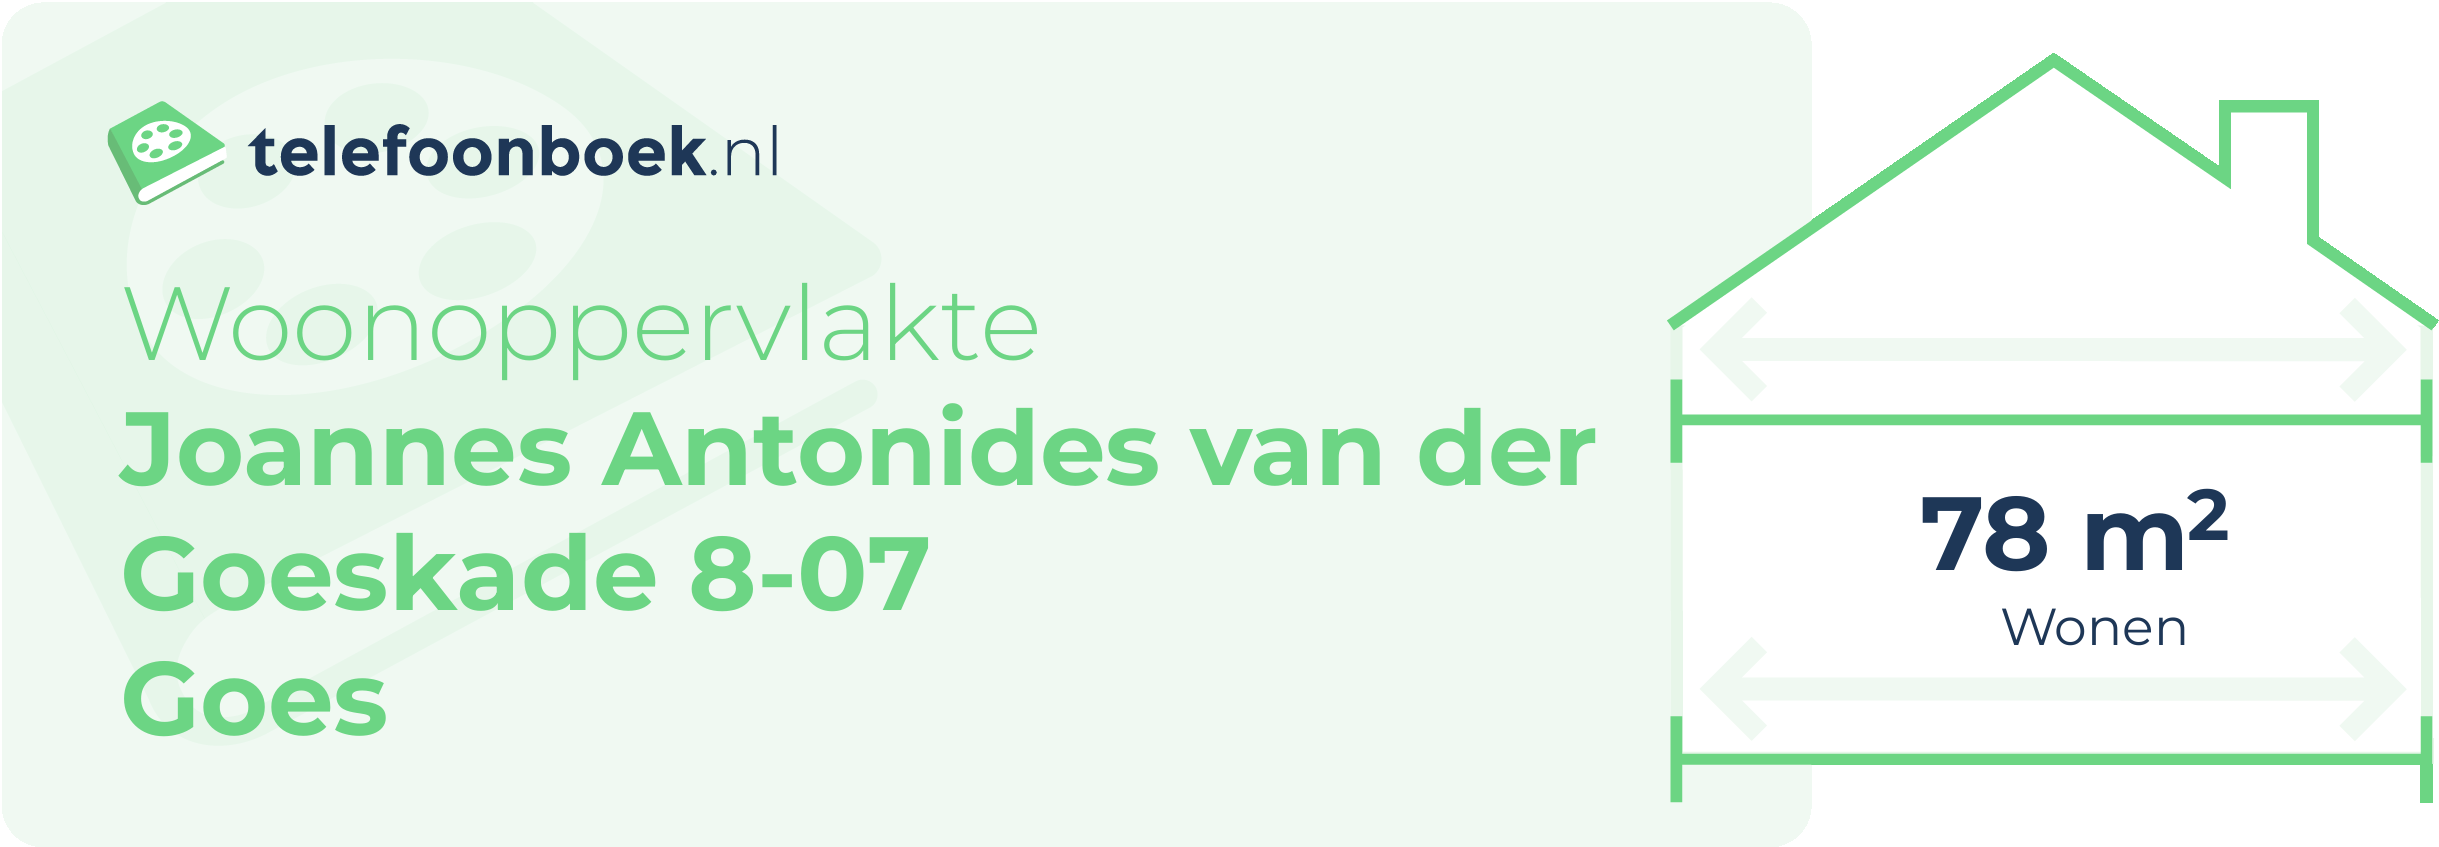 Woonoppervlakte Joannes Antonides Van Der Goeskade 8-07 Goes